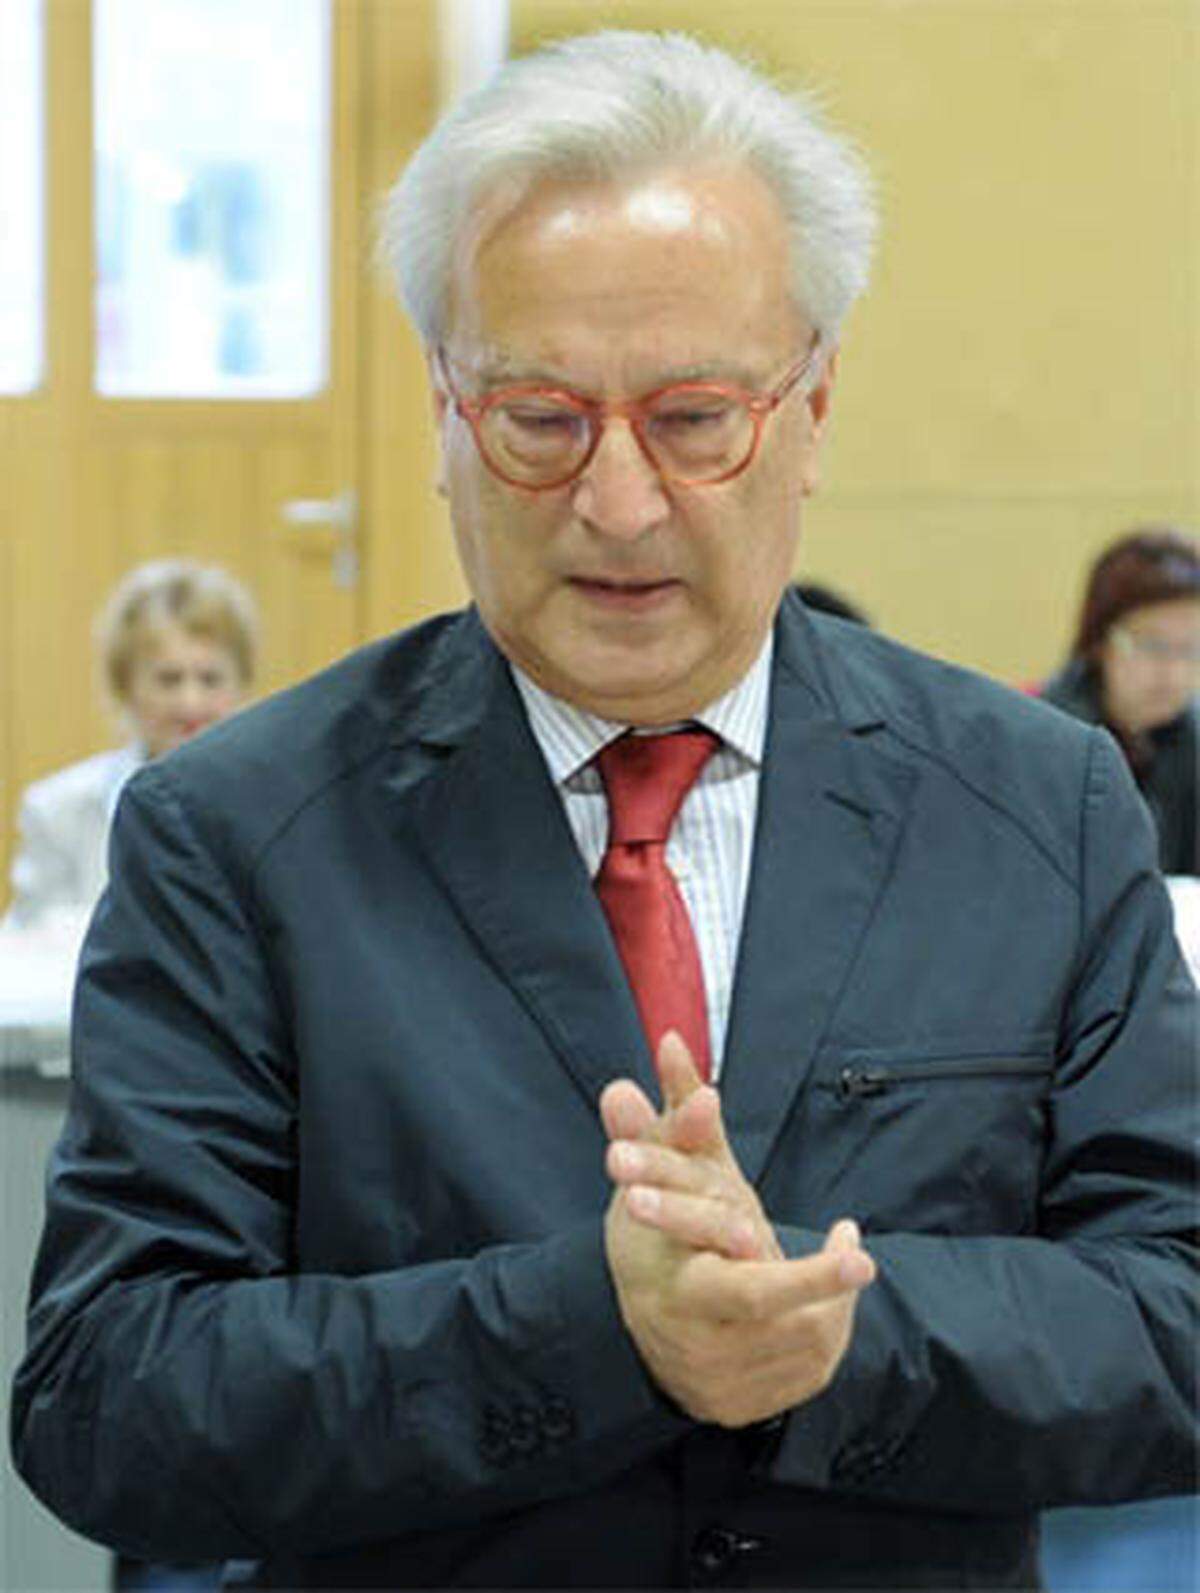 SPÖ-Spitzenkandidat Hannes Swoboda wollte sich auf eine genaue Analyse des Wahlausgangs nicht einlassen. Er erwähnte jedoch die Unterstützung der "Kronen-Zeitung" für Hans-Peter Martin. Die SPÖ müsse aber auch ihr Profil schärfen. Er werde das EU-Mandat trotz der Verluste annehmen. Er wolle aber für seine Nachfolgerin oder Nachfolger bessere Voraussetzungen schaffen. Die Kritik an der FPÖ im Wahlkampf bezeichnete er als "absolut richtig".